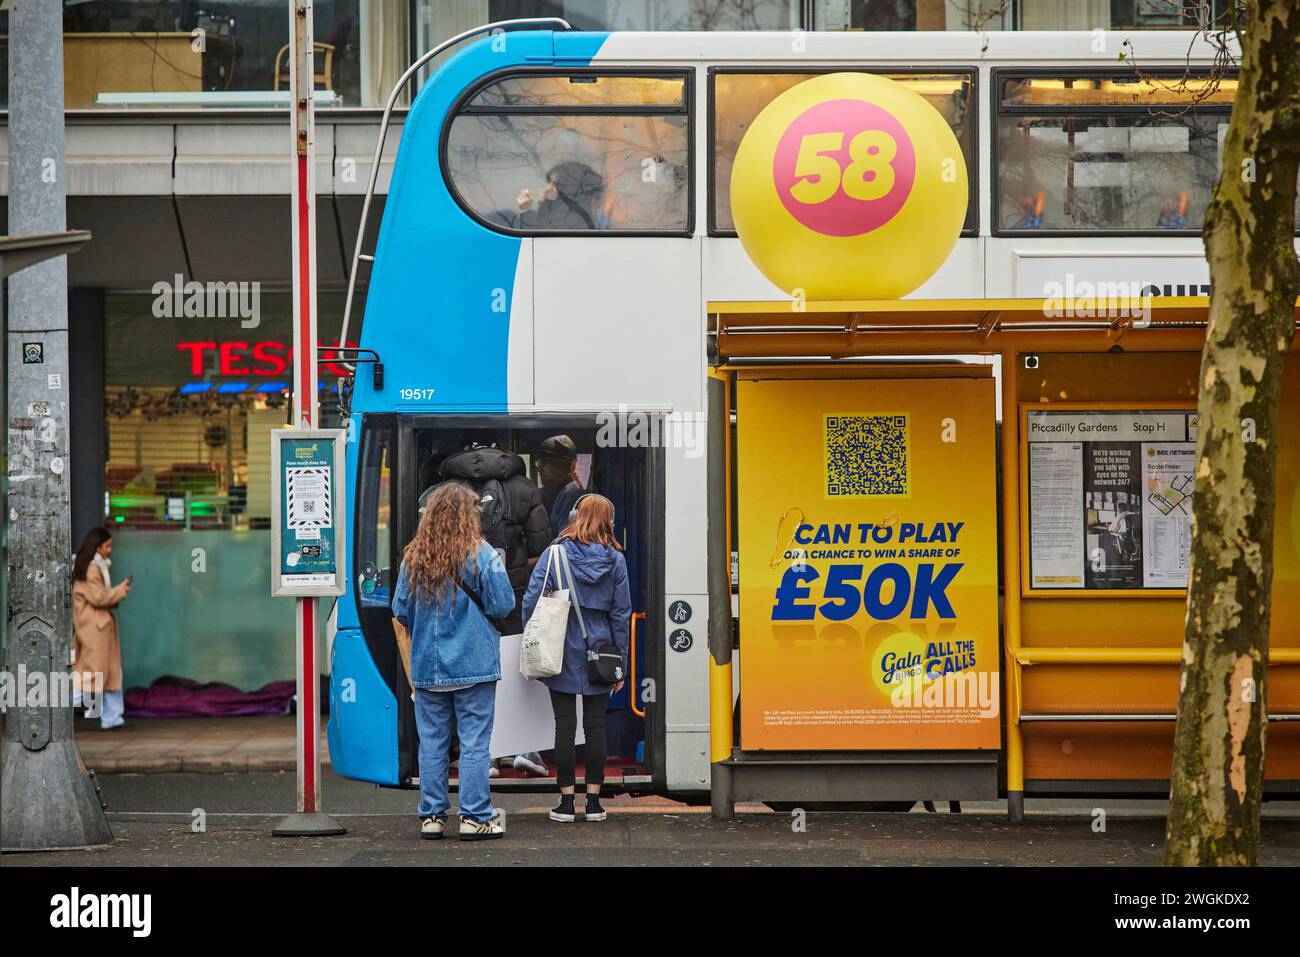 Stazione degli autobus di Manchester Piccadilly Gardens, pubblicità Gala Bingo alla fermata degli autobus 58 Foto Stock